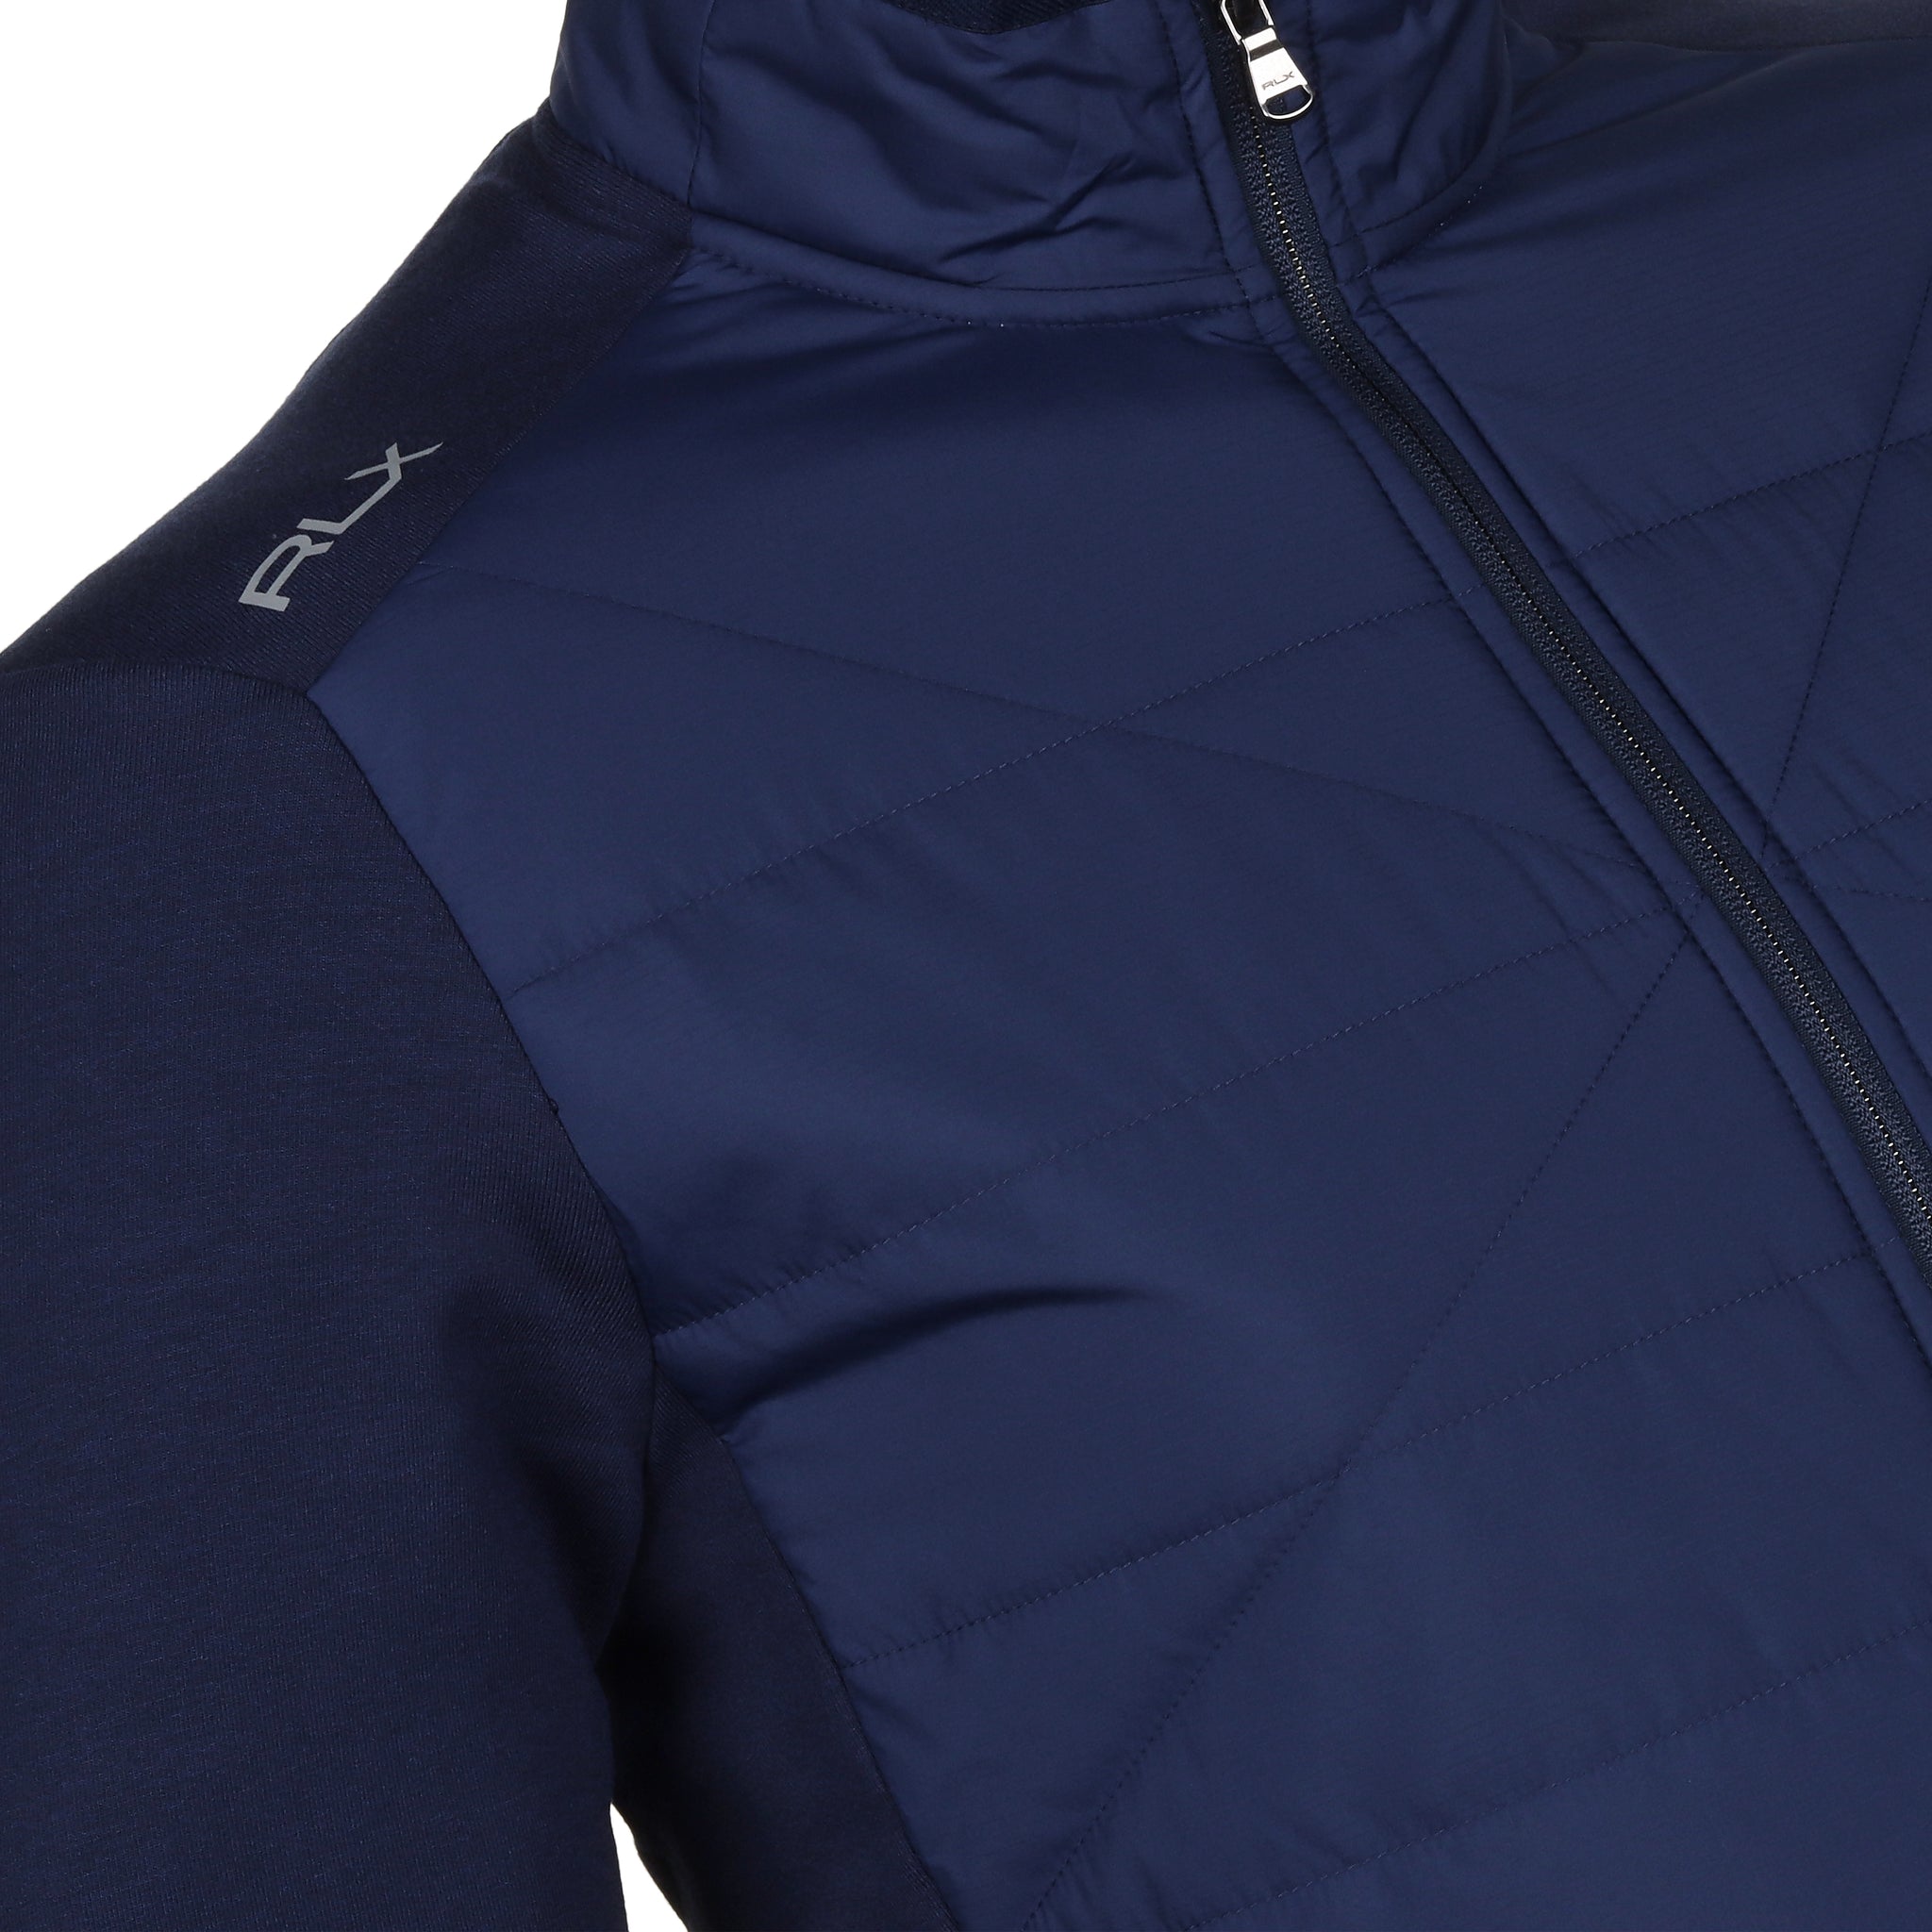 rlx-ralph-lauren-full-zip-hybrid-jacket-785931190-refined-navy-001